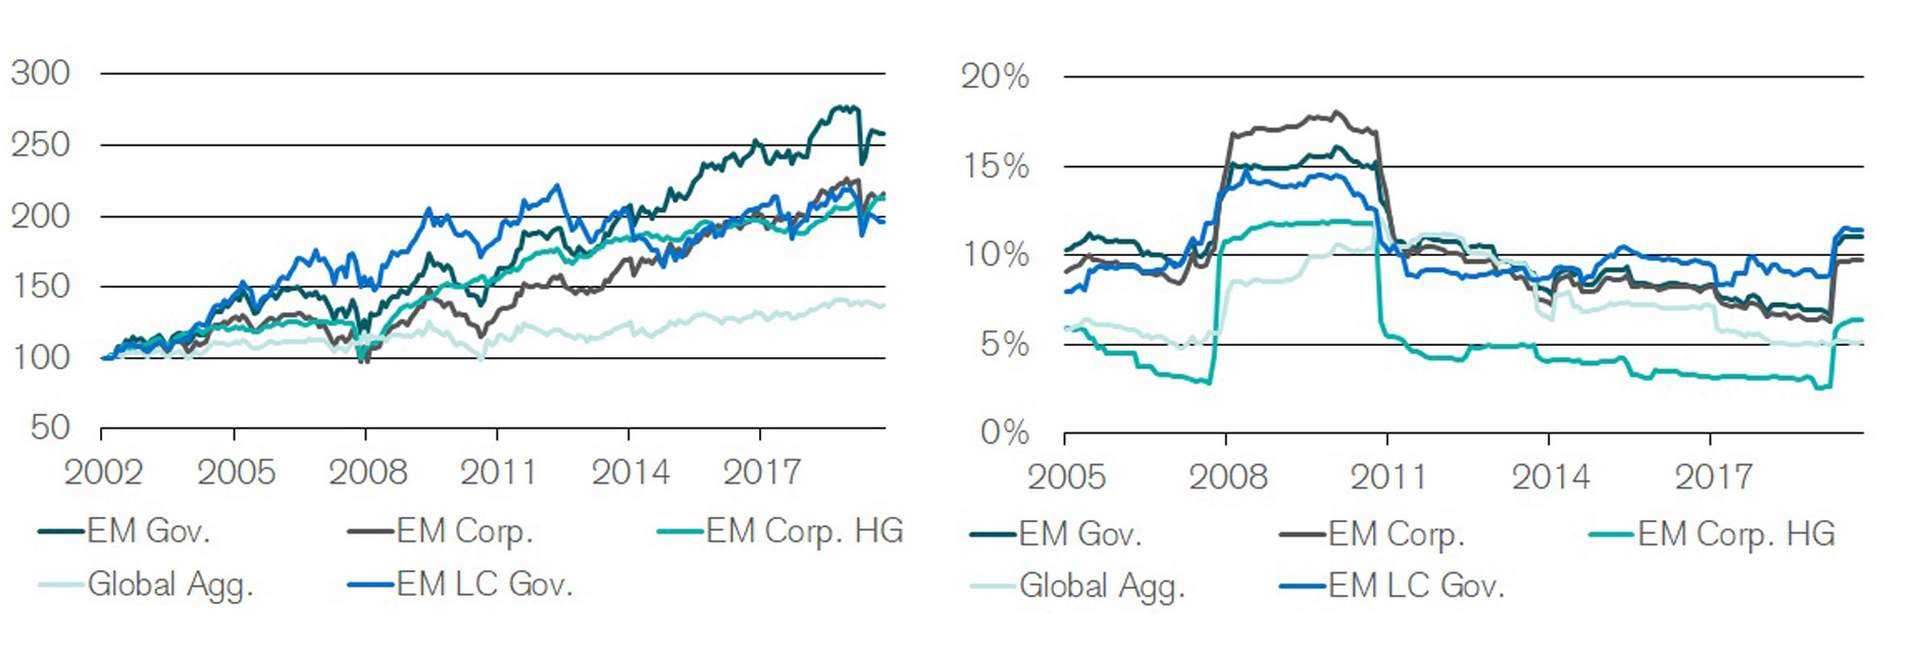 Emerging Markets-Anleihen weisen deutlich höhere historische Renditen als Anleihen aus den Industrienationen auf. Allerdings sind letztere vor allem in Krisensituationen weniger volatil.